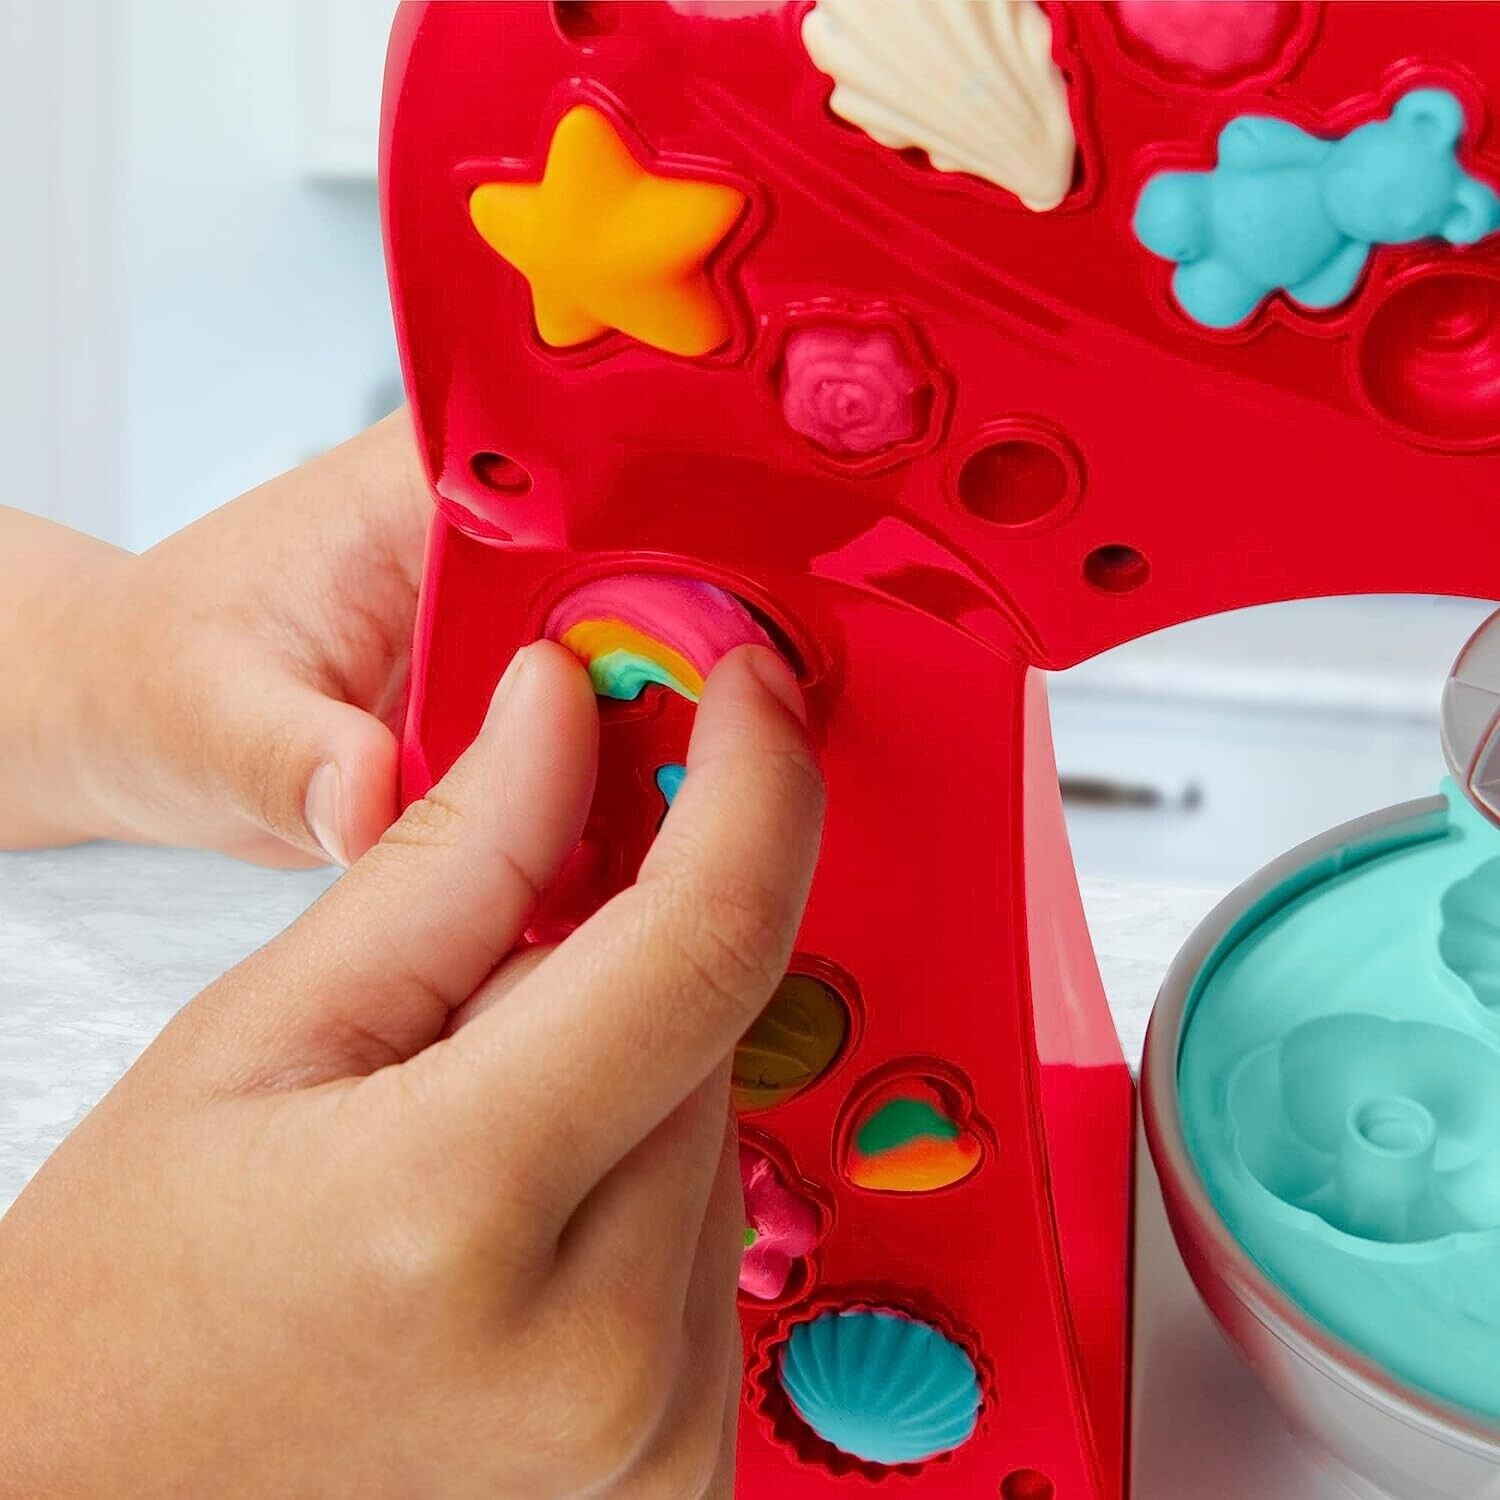 Play-Doh Kitchen Creations Magical Mixer Playset Kids Fun Arts & Crafts